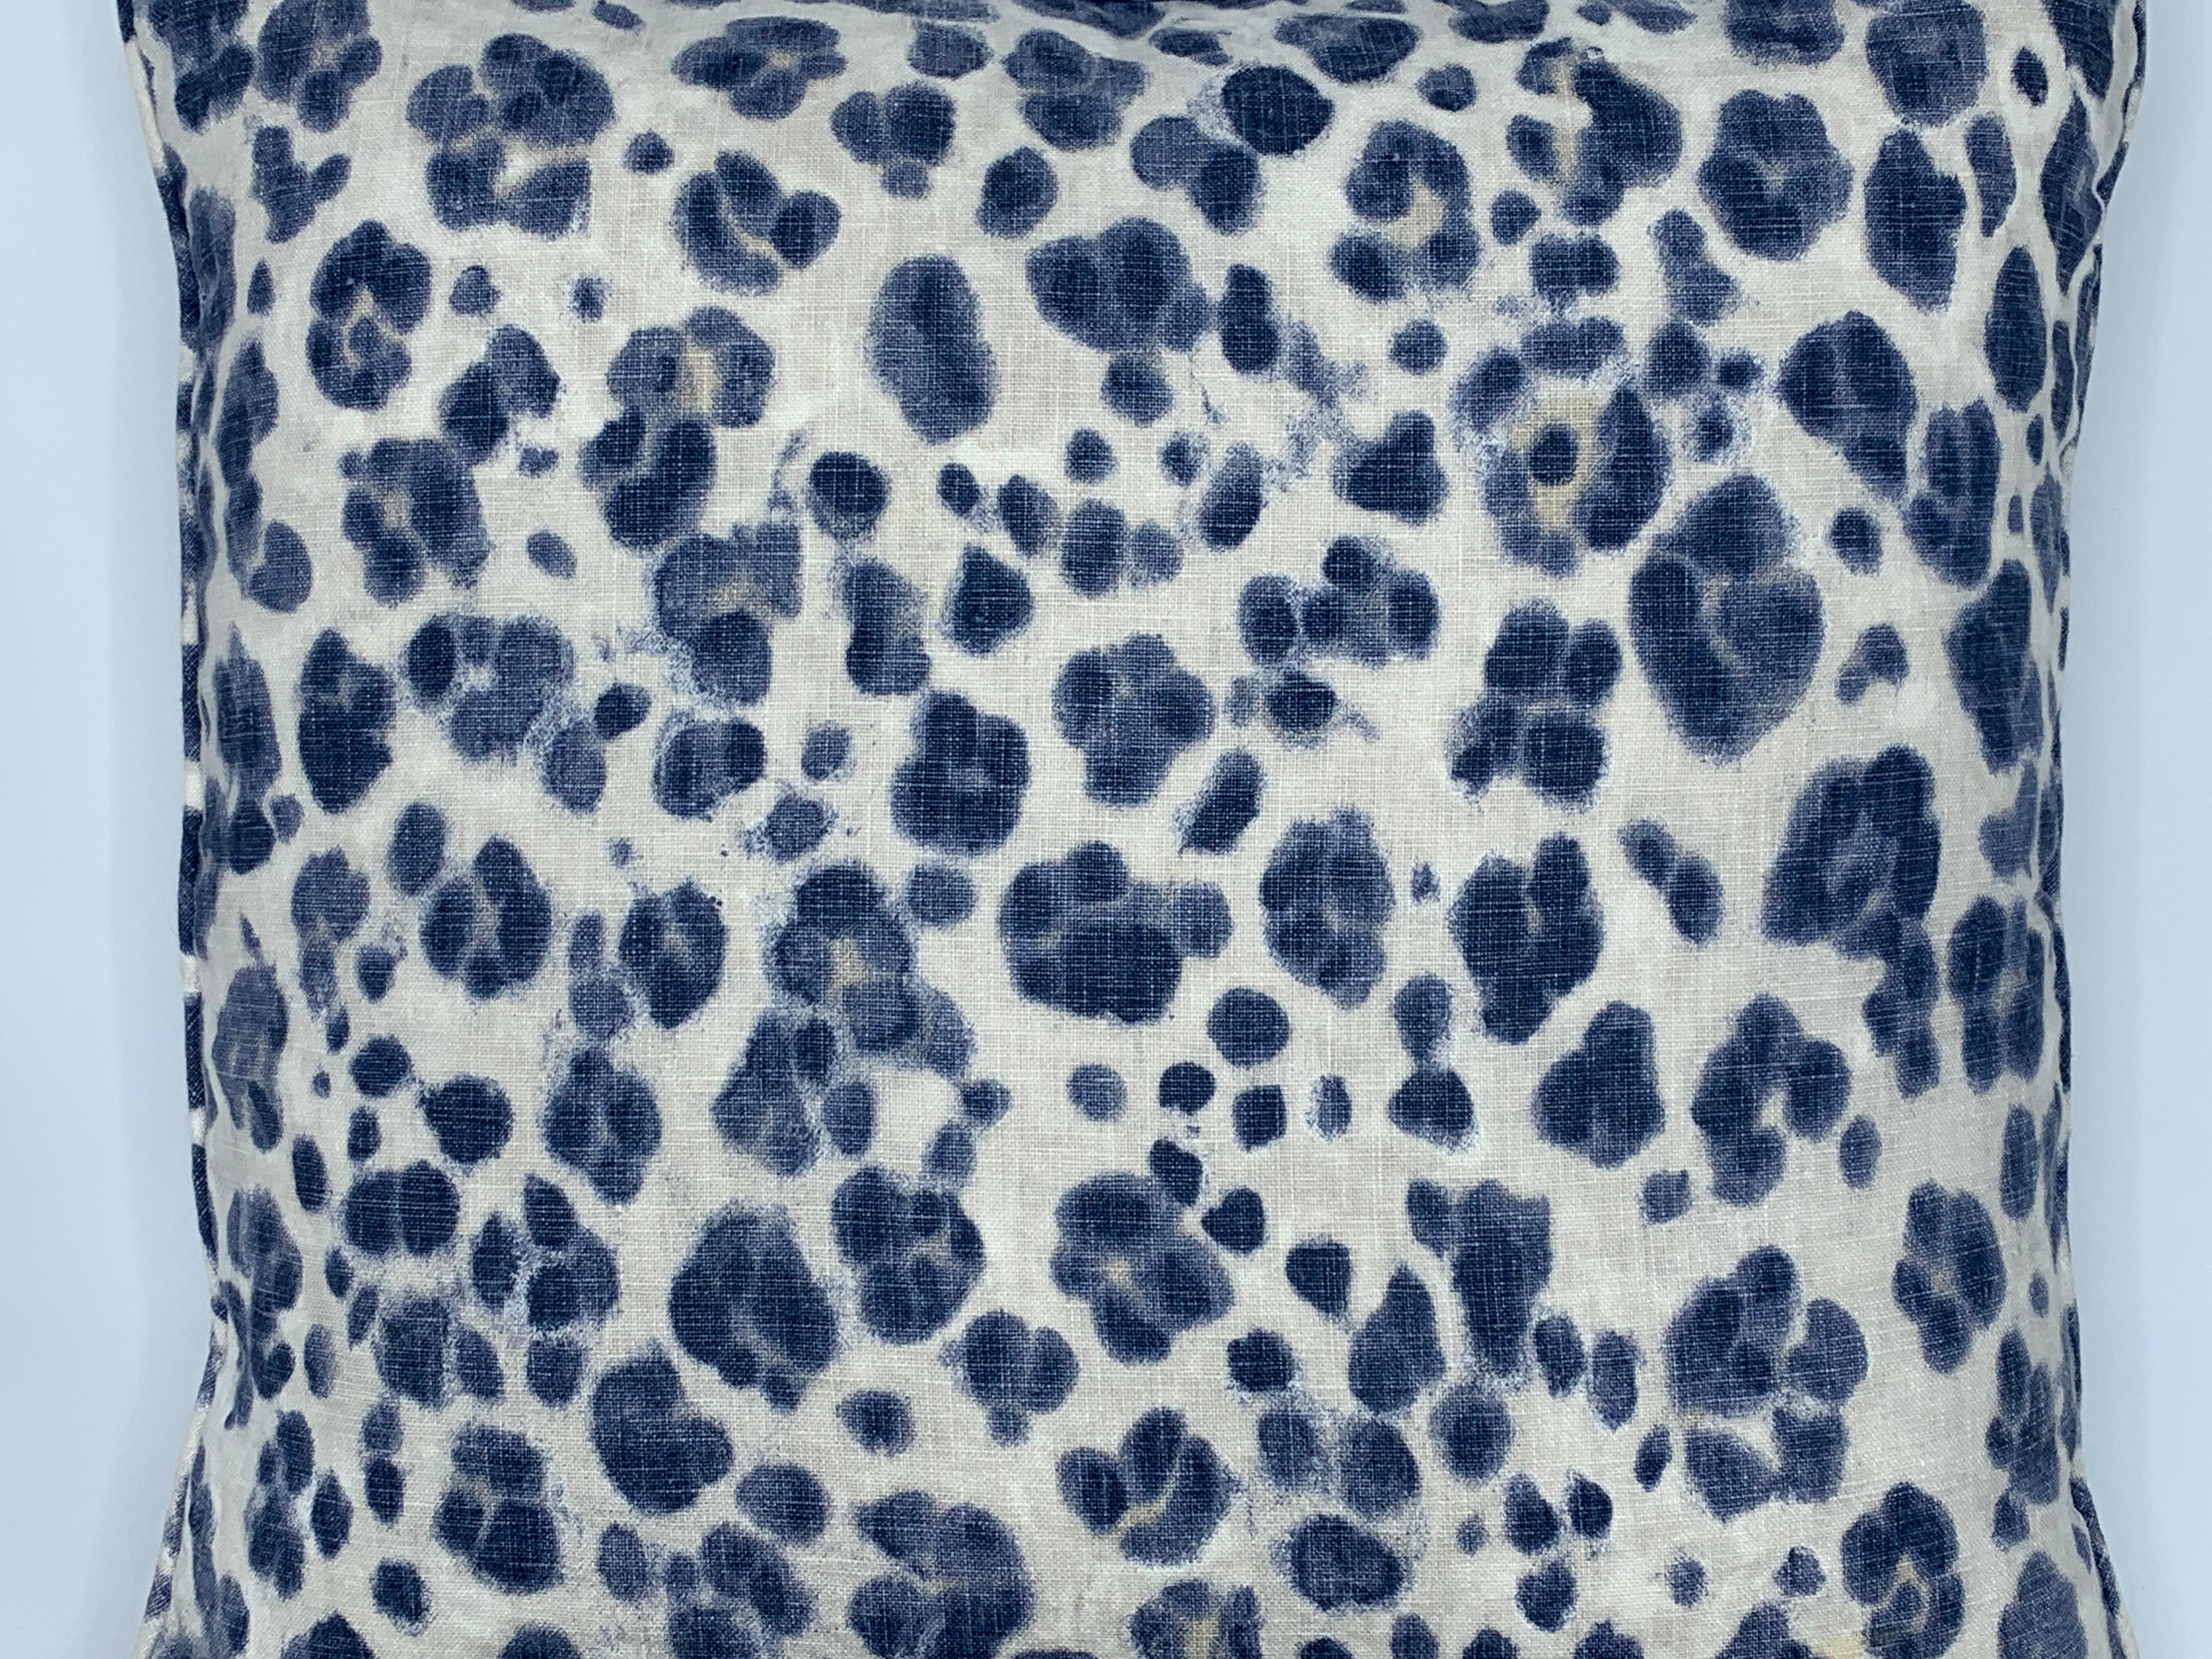 Modern Thibaut 'Panthera' Blue and White Panther Motif on Linen Pillows, Pair